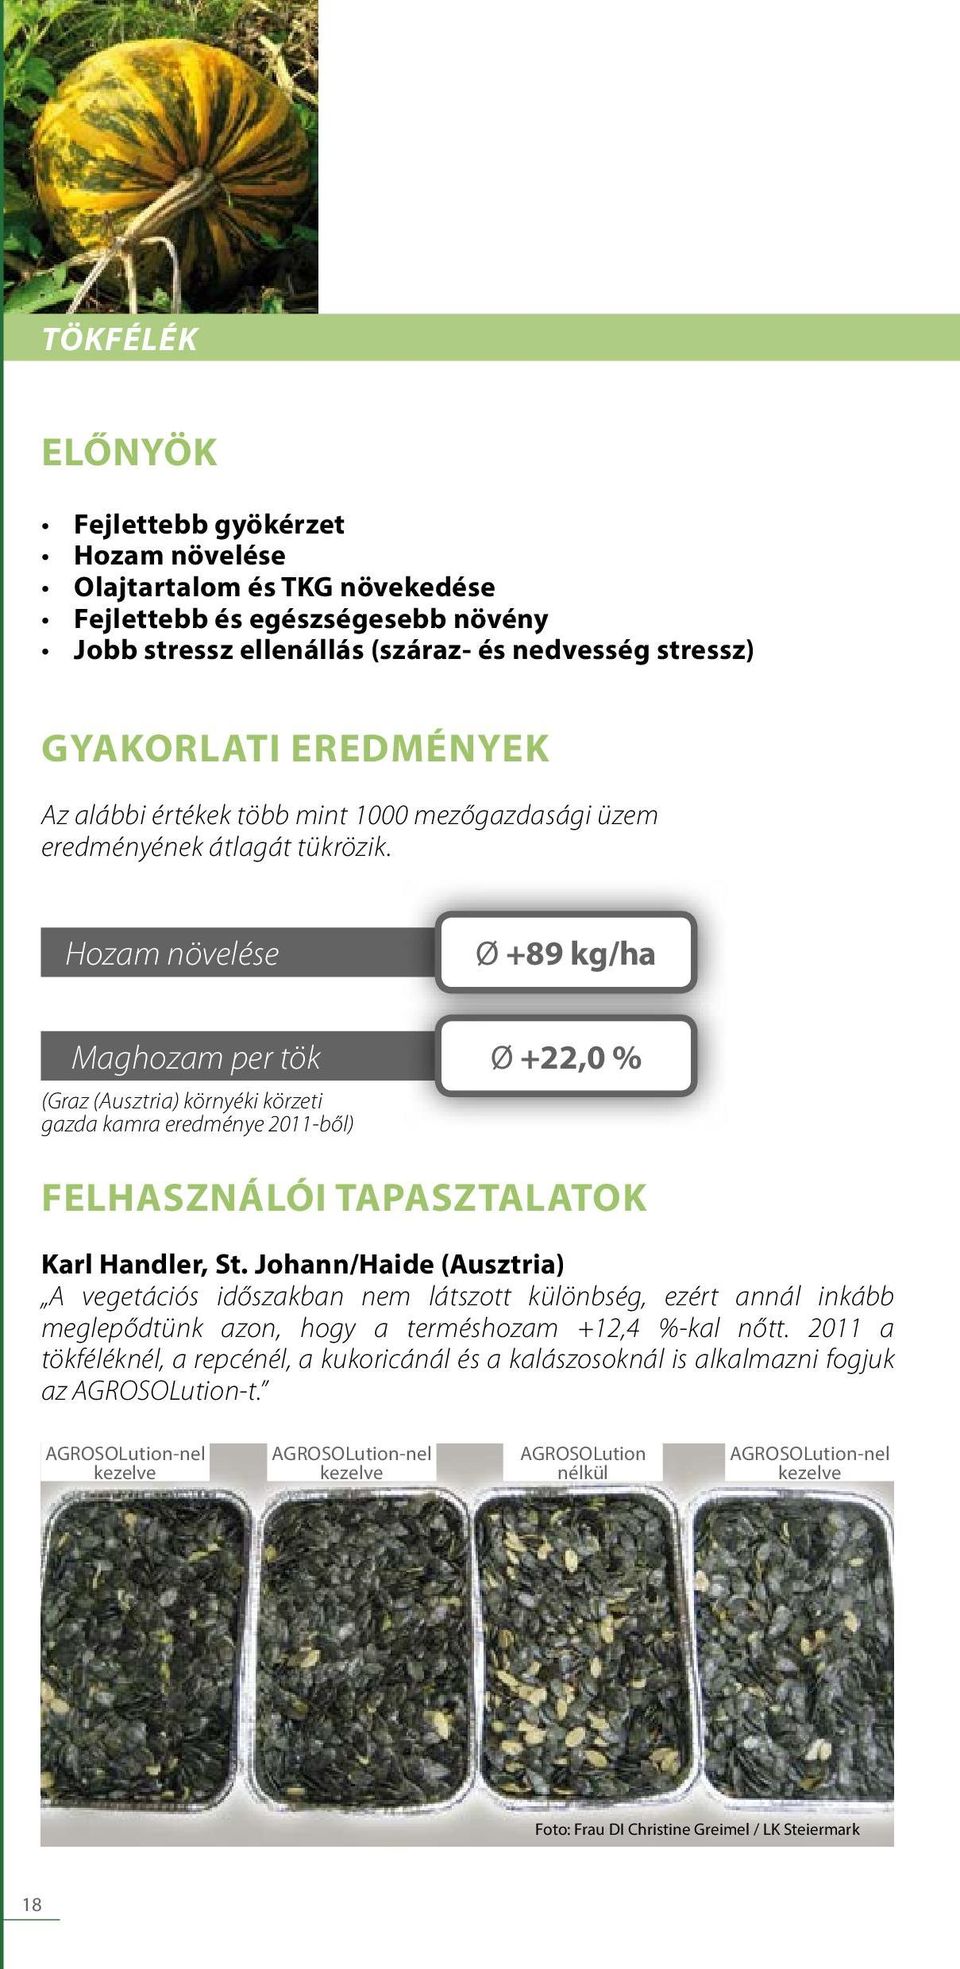 Hozam növelése Ø +89 kg/ha Maghozam per tök Ø +22,0 % (Graz (Ausztria) környéki körzeti gazda kamra eredménye 2011-bo l) FELHASZNÁLÓI TAPASZTALATOK Karl Handler, St.